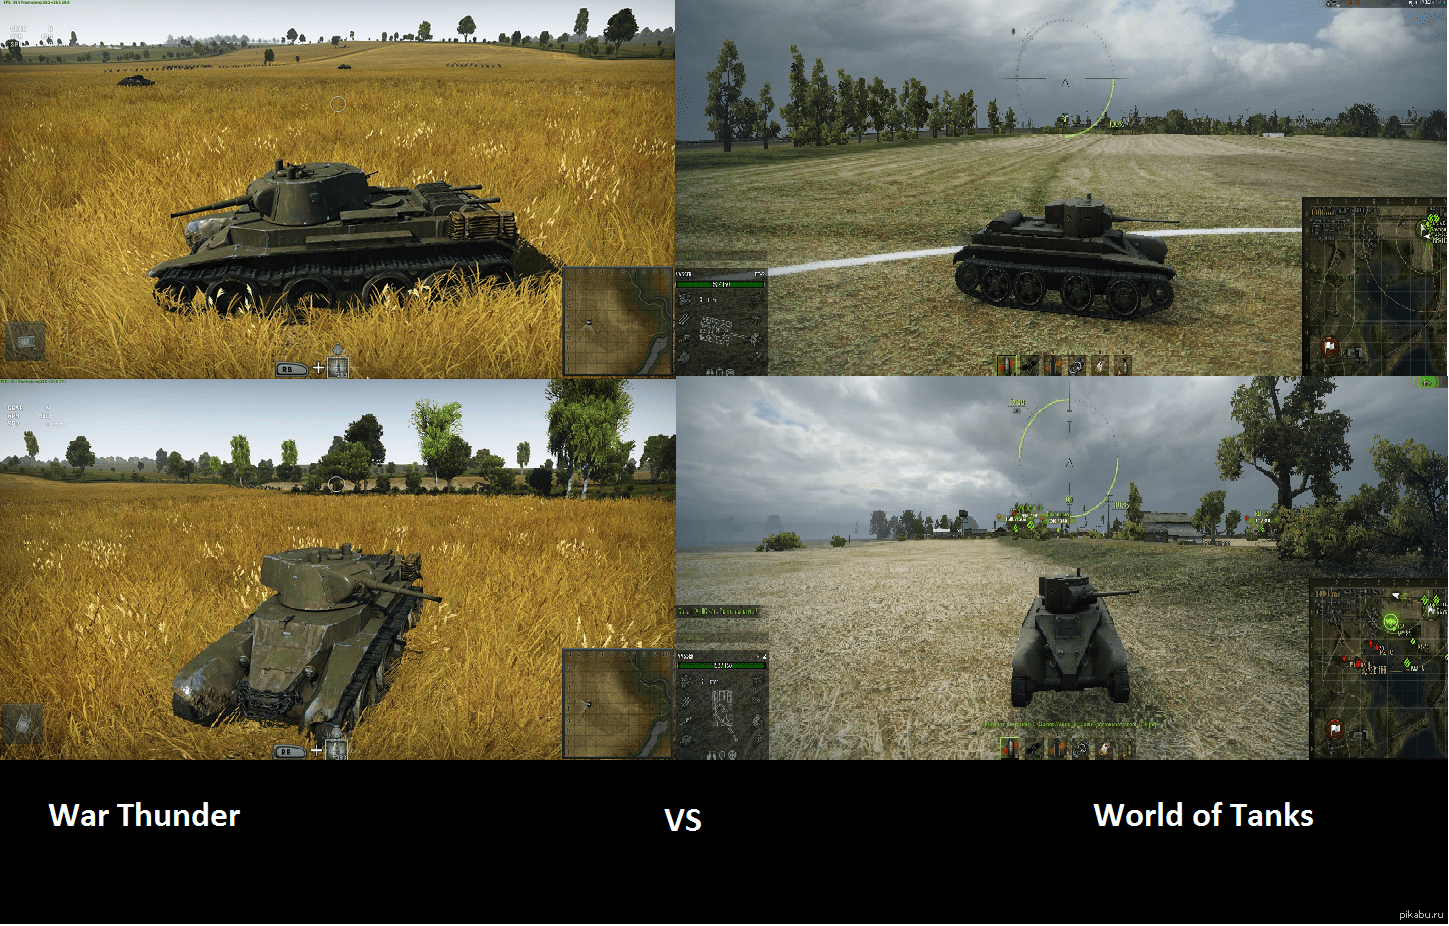 Сравниваются достоинства и недостатки игр War Thunder и World of Tanks